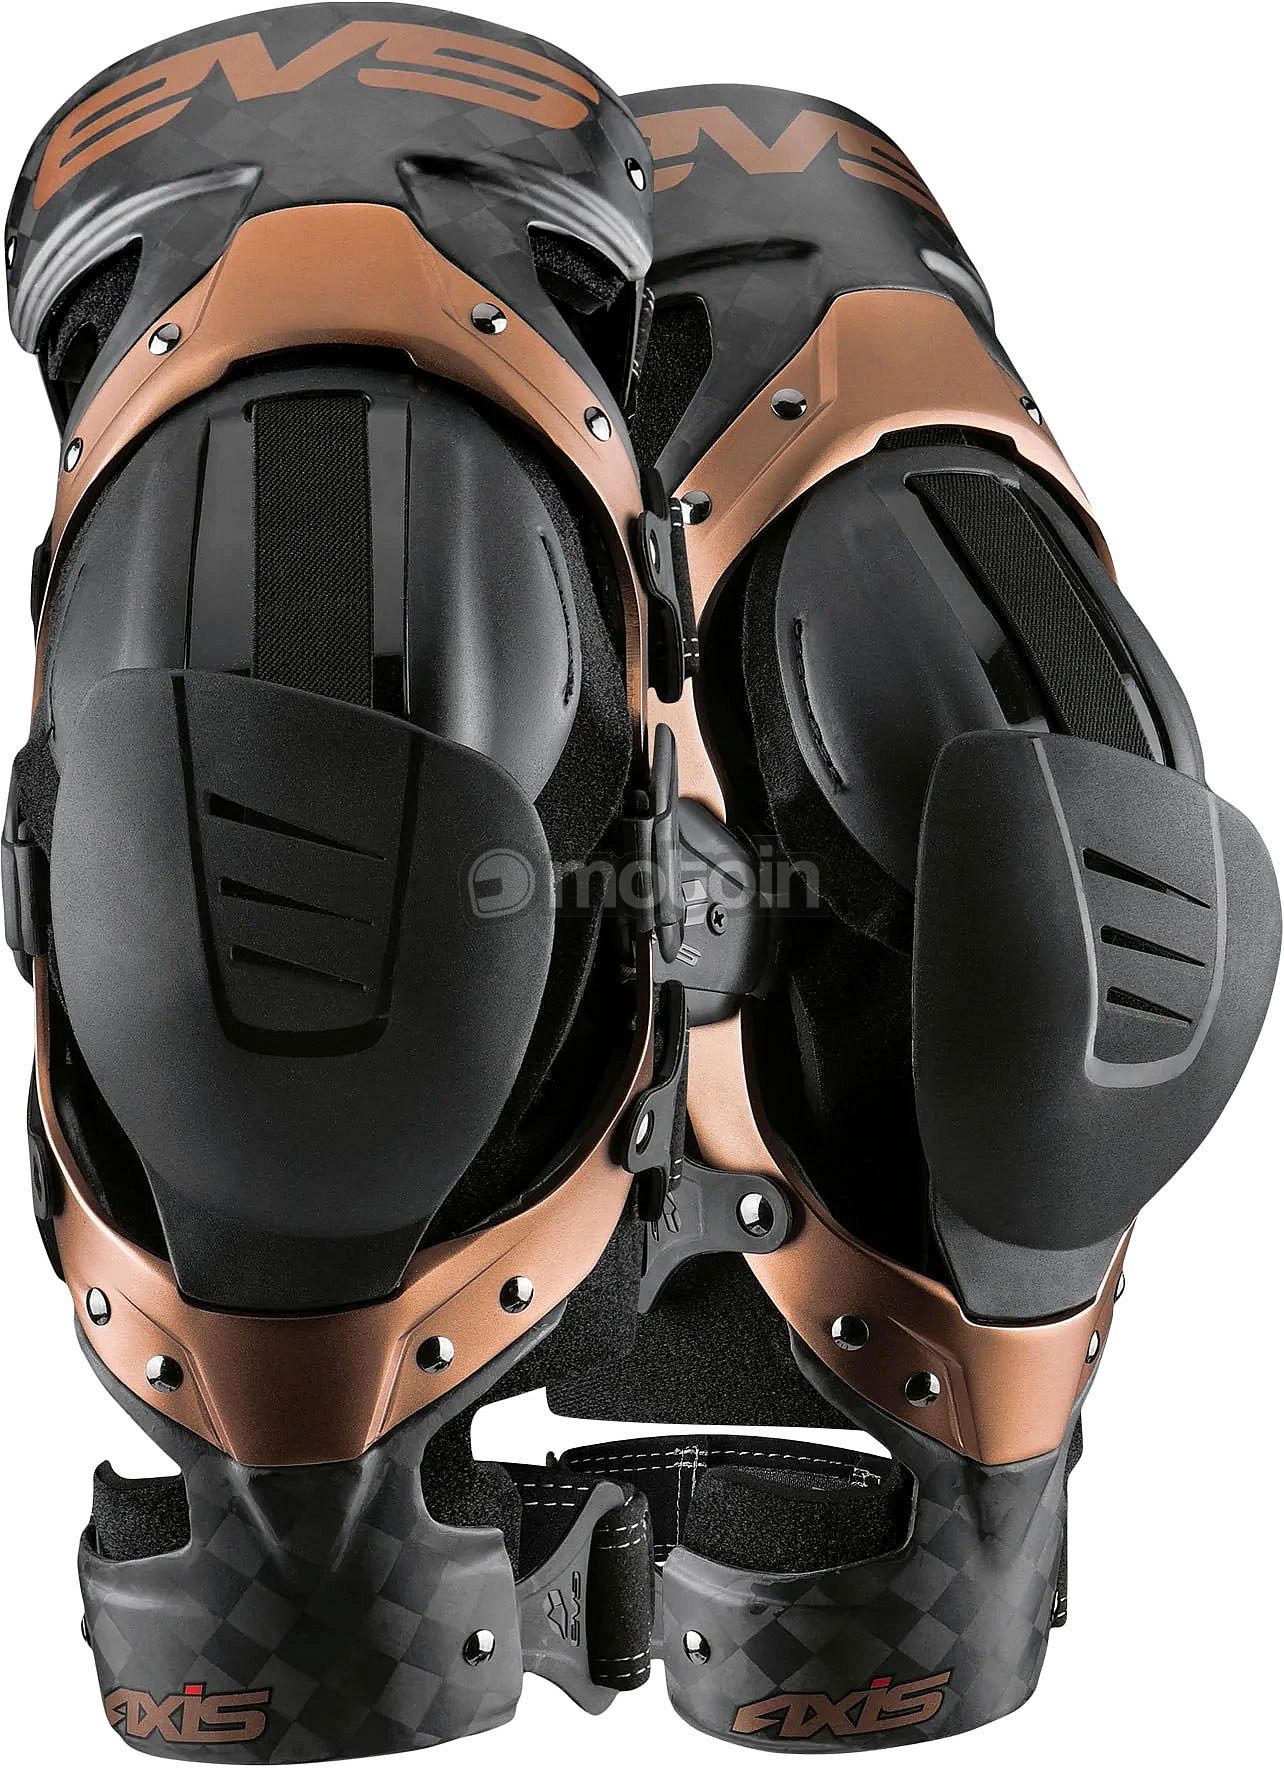 EVS Axis Pro, aparaty na kolana